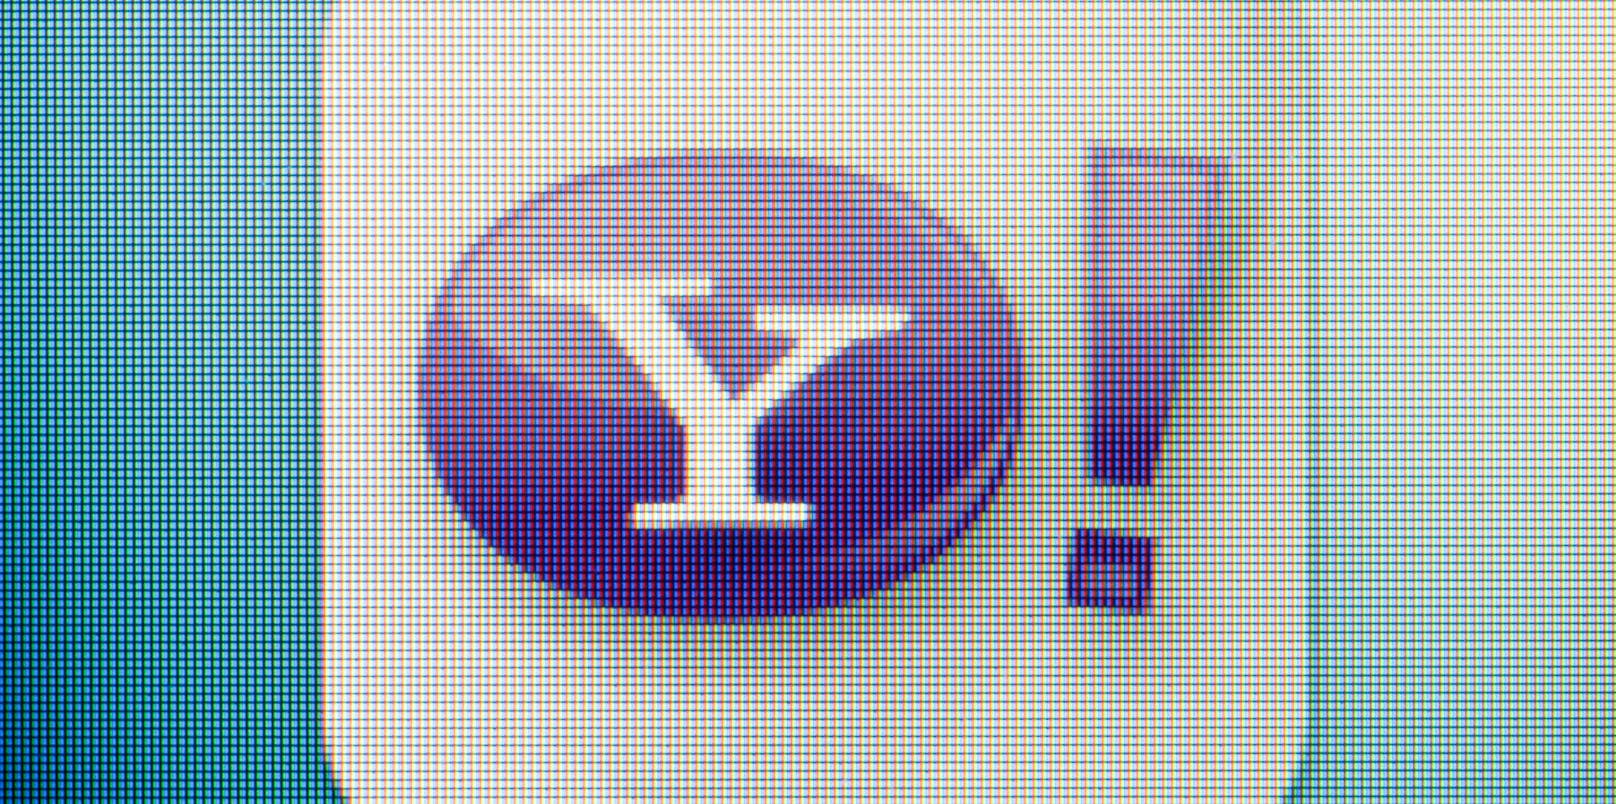 Noch im Jahr 2016 gab Yahoo laut CNBC zu, dass rund 500 Millionen Accounts betroffen gewesen seien.